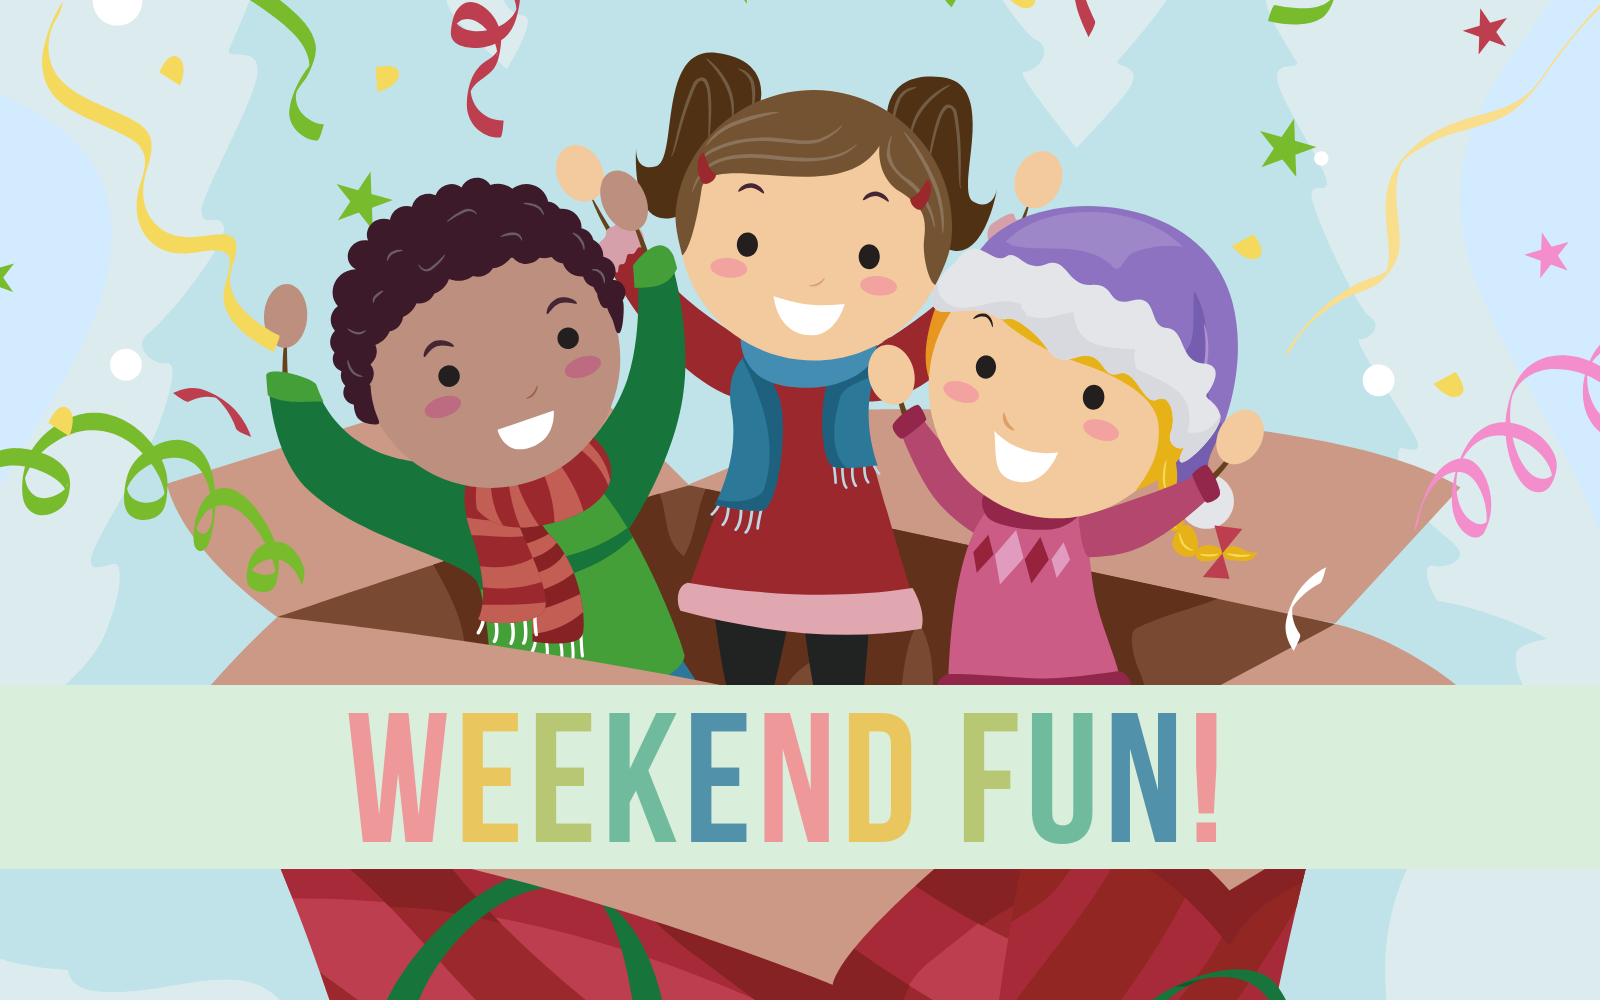 Weekend fun. Weekend картинка для детей. Картинки weekend семьи. Fun weekends. Friends family weekend